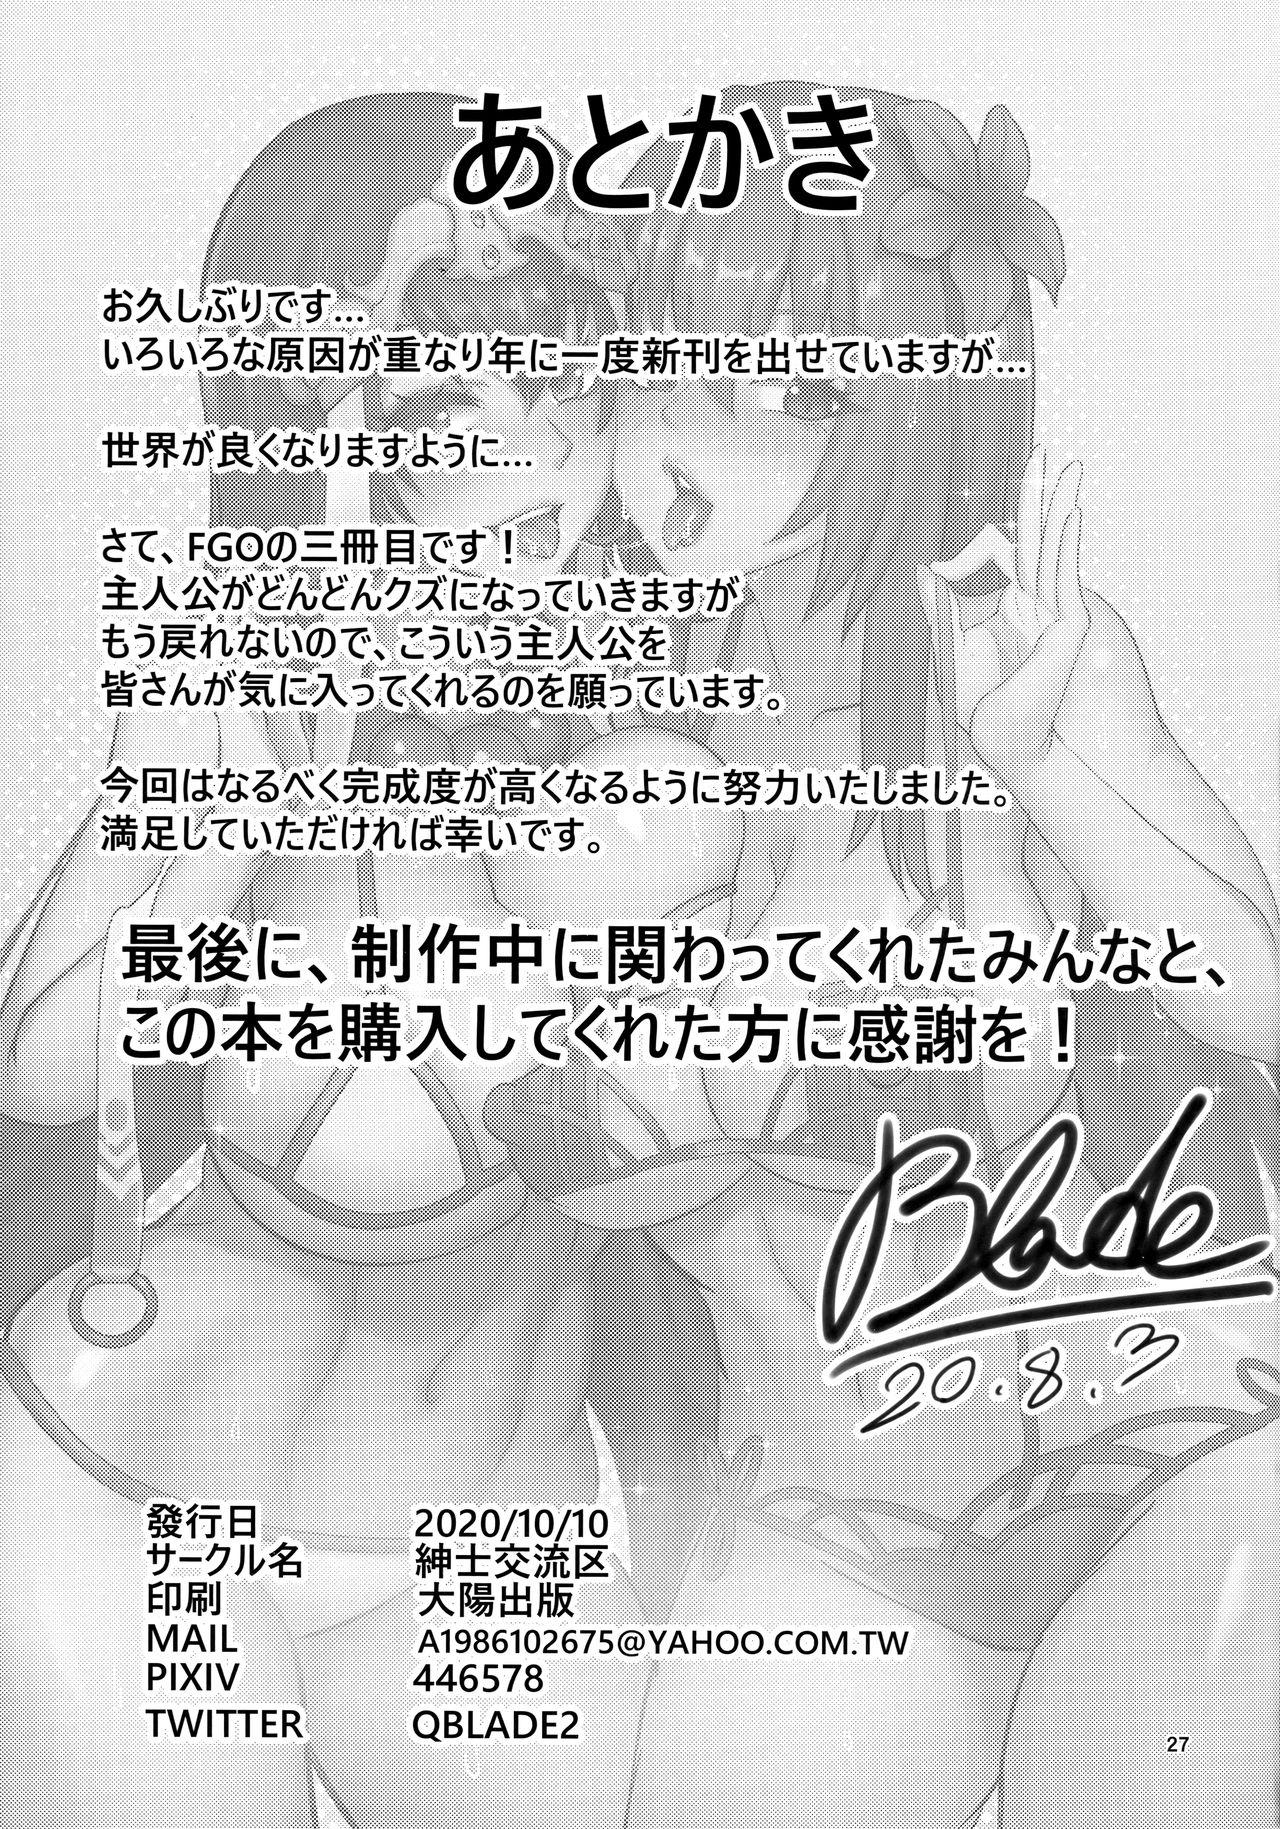 Retro Chaldea Heaven Shishou Shishou - Fate grand order Hotfuck - Page 26